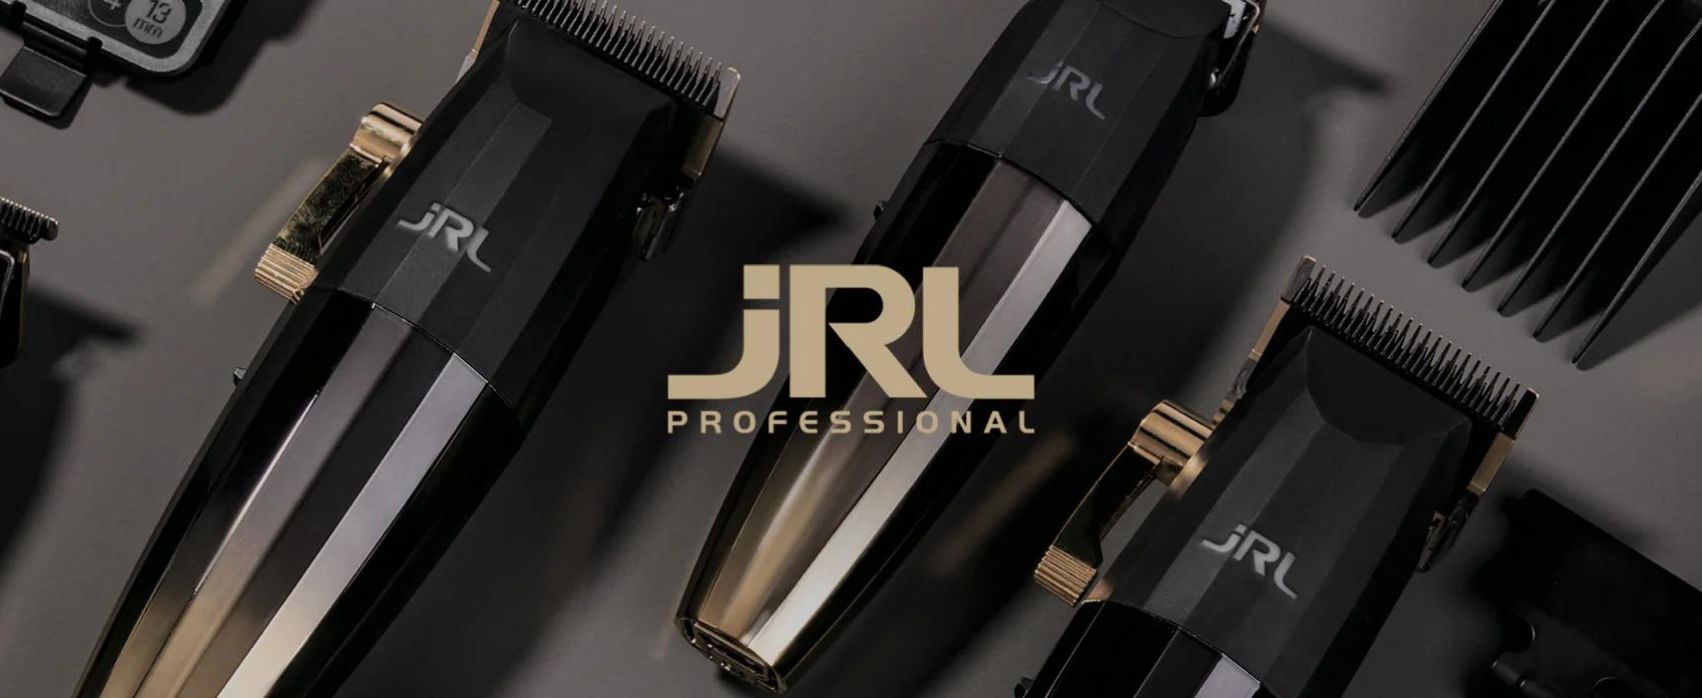 znacka-JRL-Professional